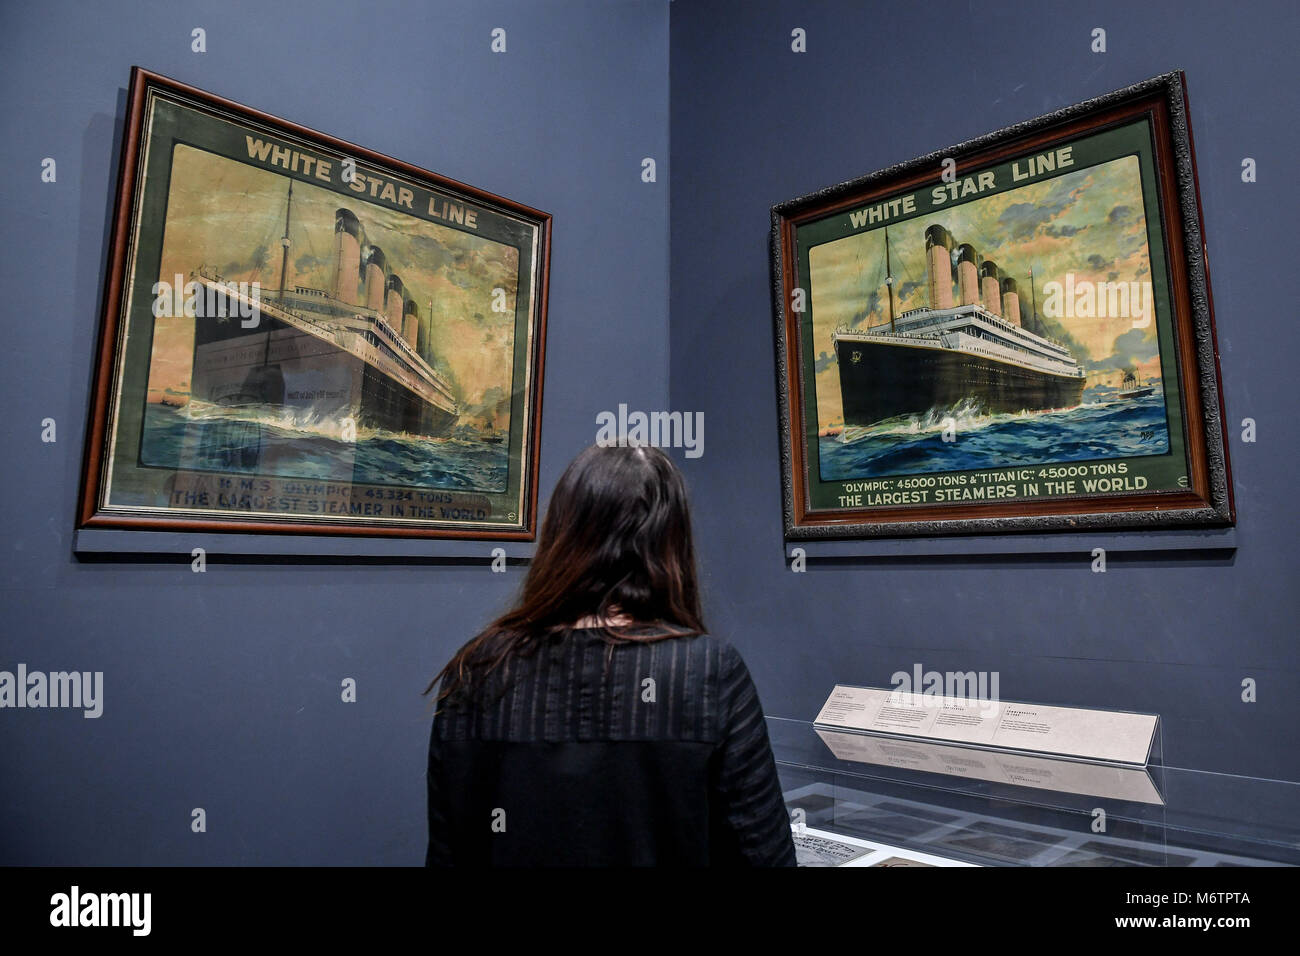 Una donna guarda a due poster pubblicitari dal White Star Line company, durante un'anteprima del Titanic storie mostra presso il Museo Nazionale Marittimo Cornwall, Falmouth, che si apre il 8 marzo. Foto Stock